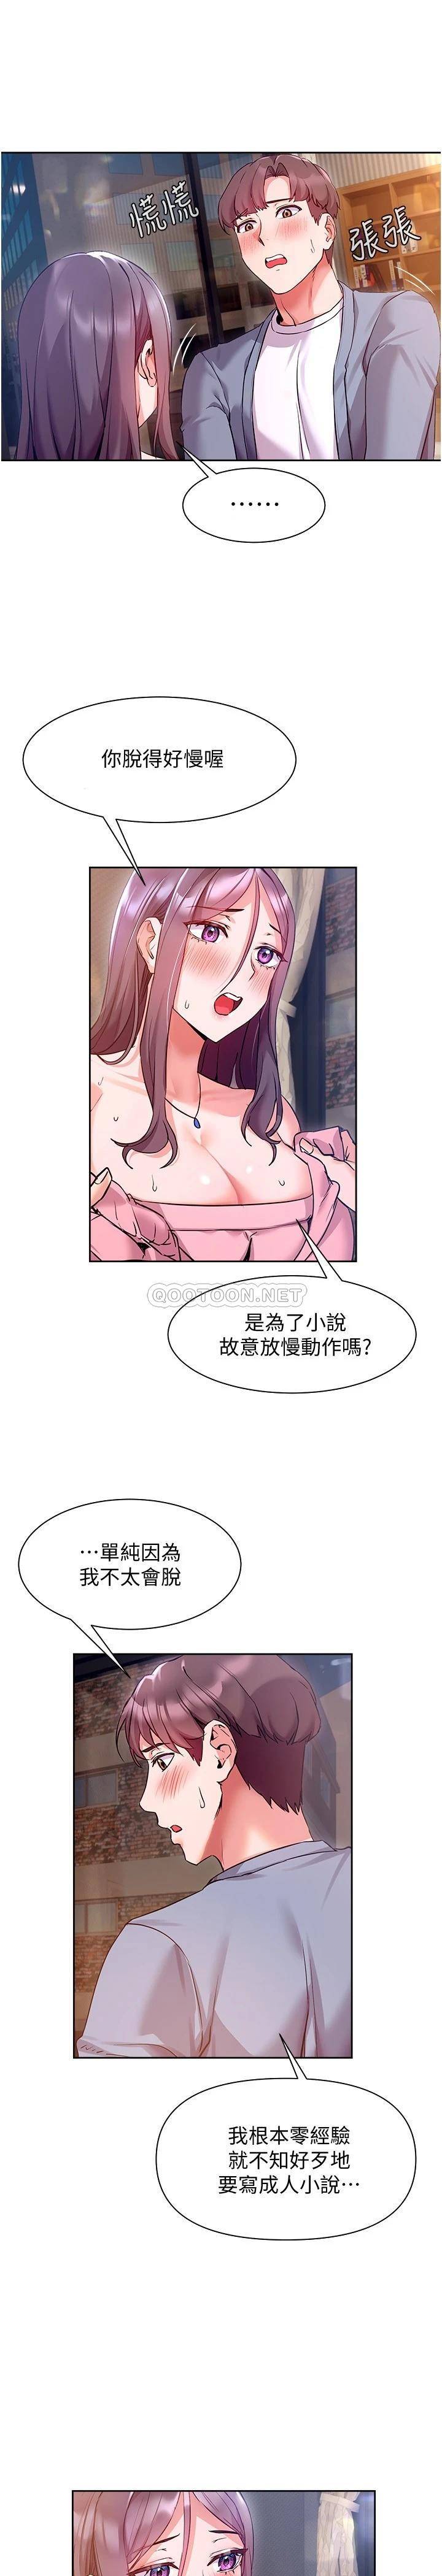 韩国污漫画 現上教學 第12话让你体验乳交的快感! 7